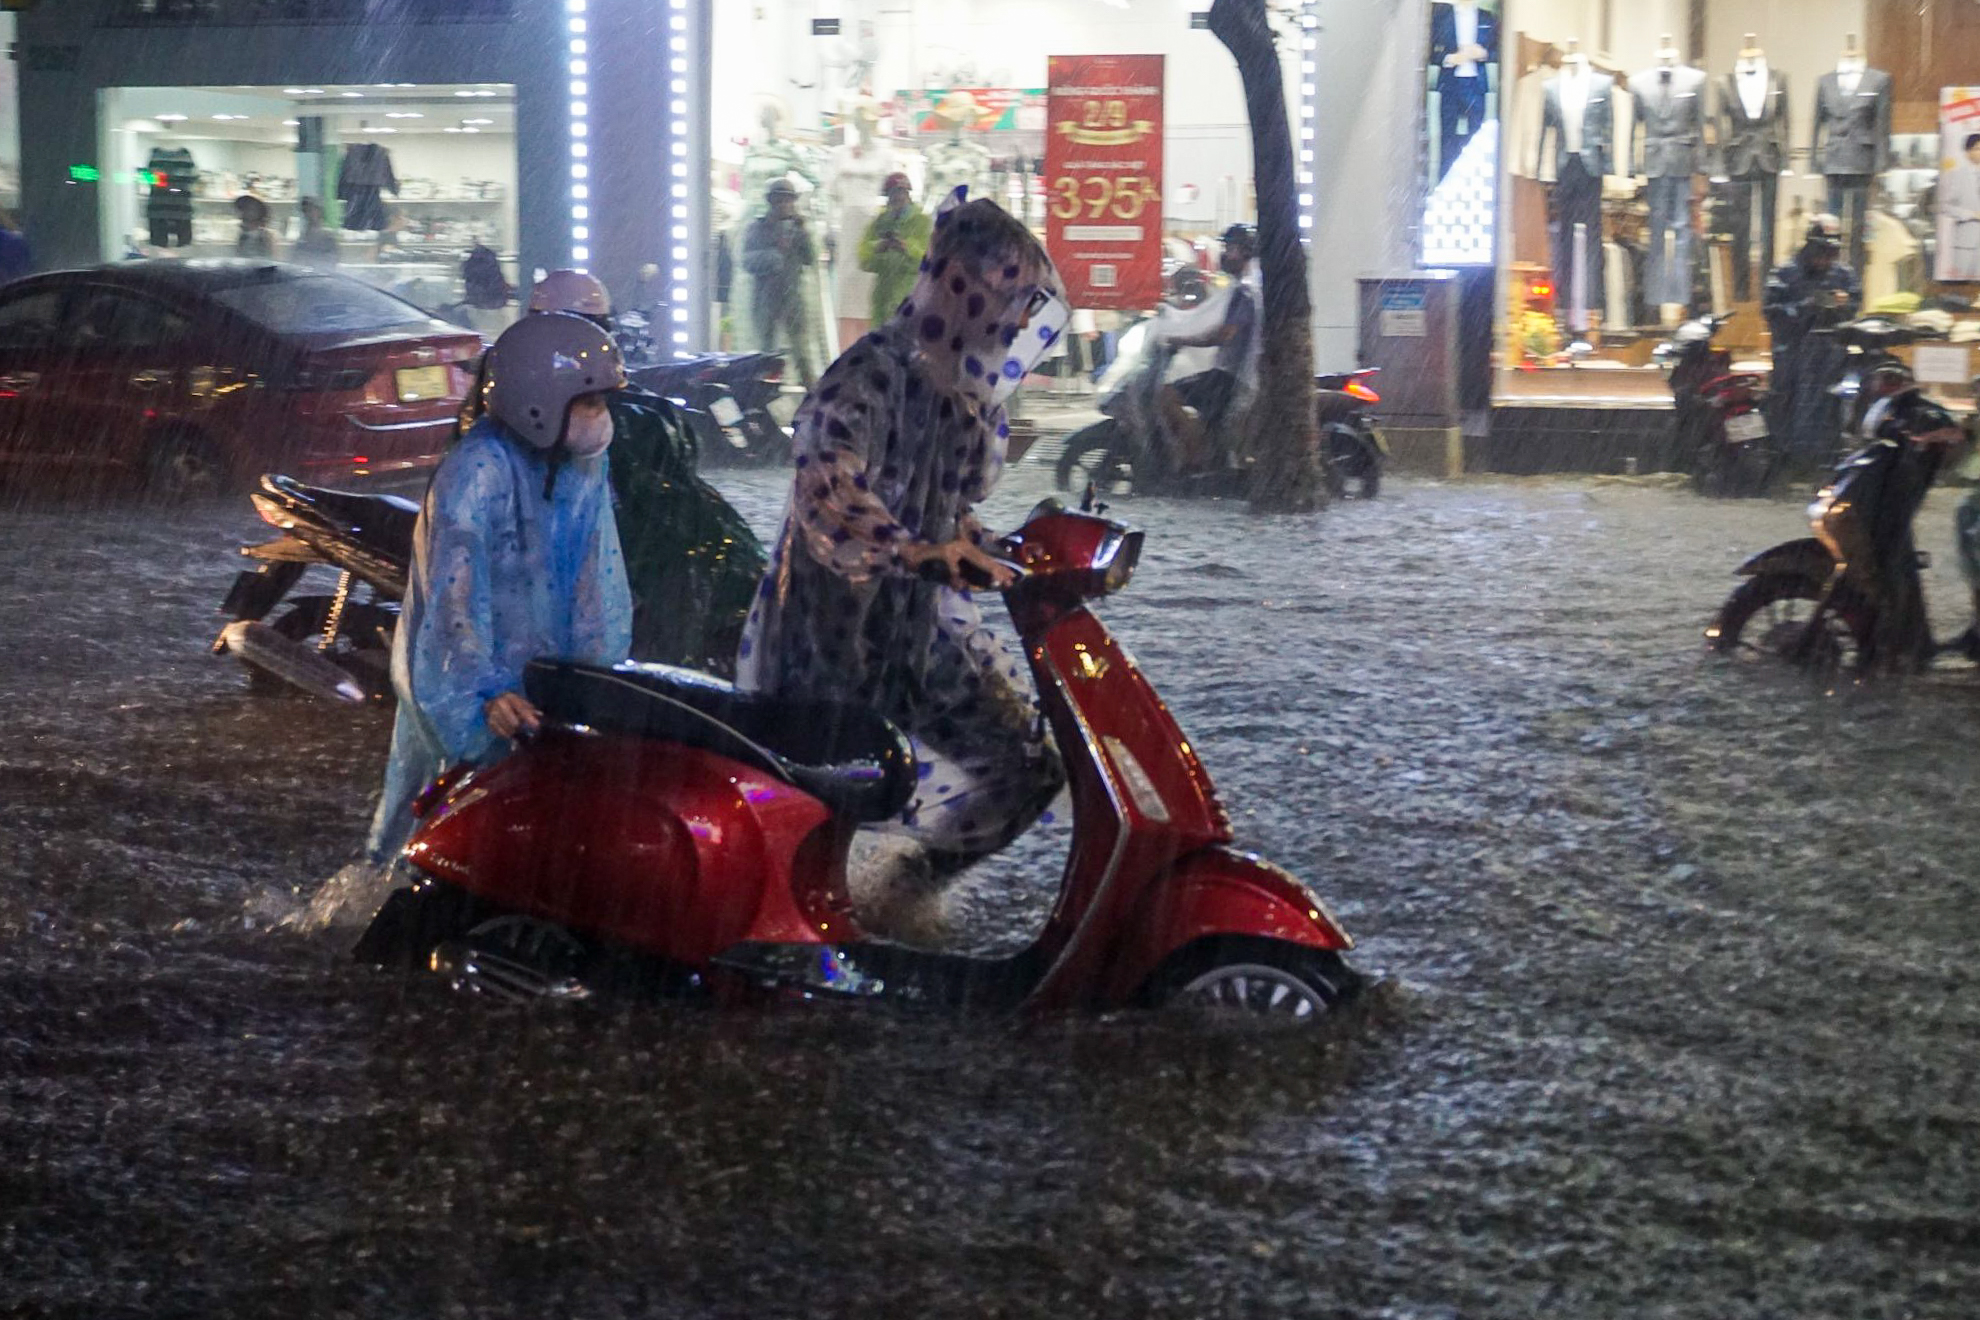 Đường phố Đà Nẵng ngập cục bộ sau mưa lớn, người dân chật vật lội nước về nhà - Ảnh 8.